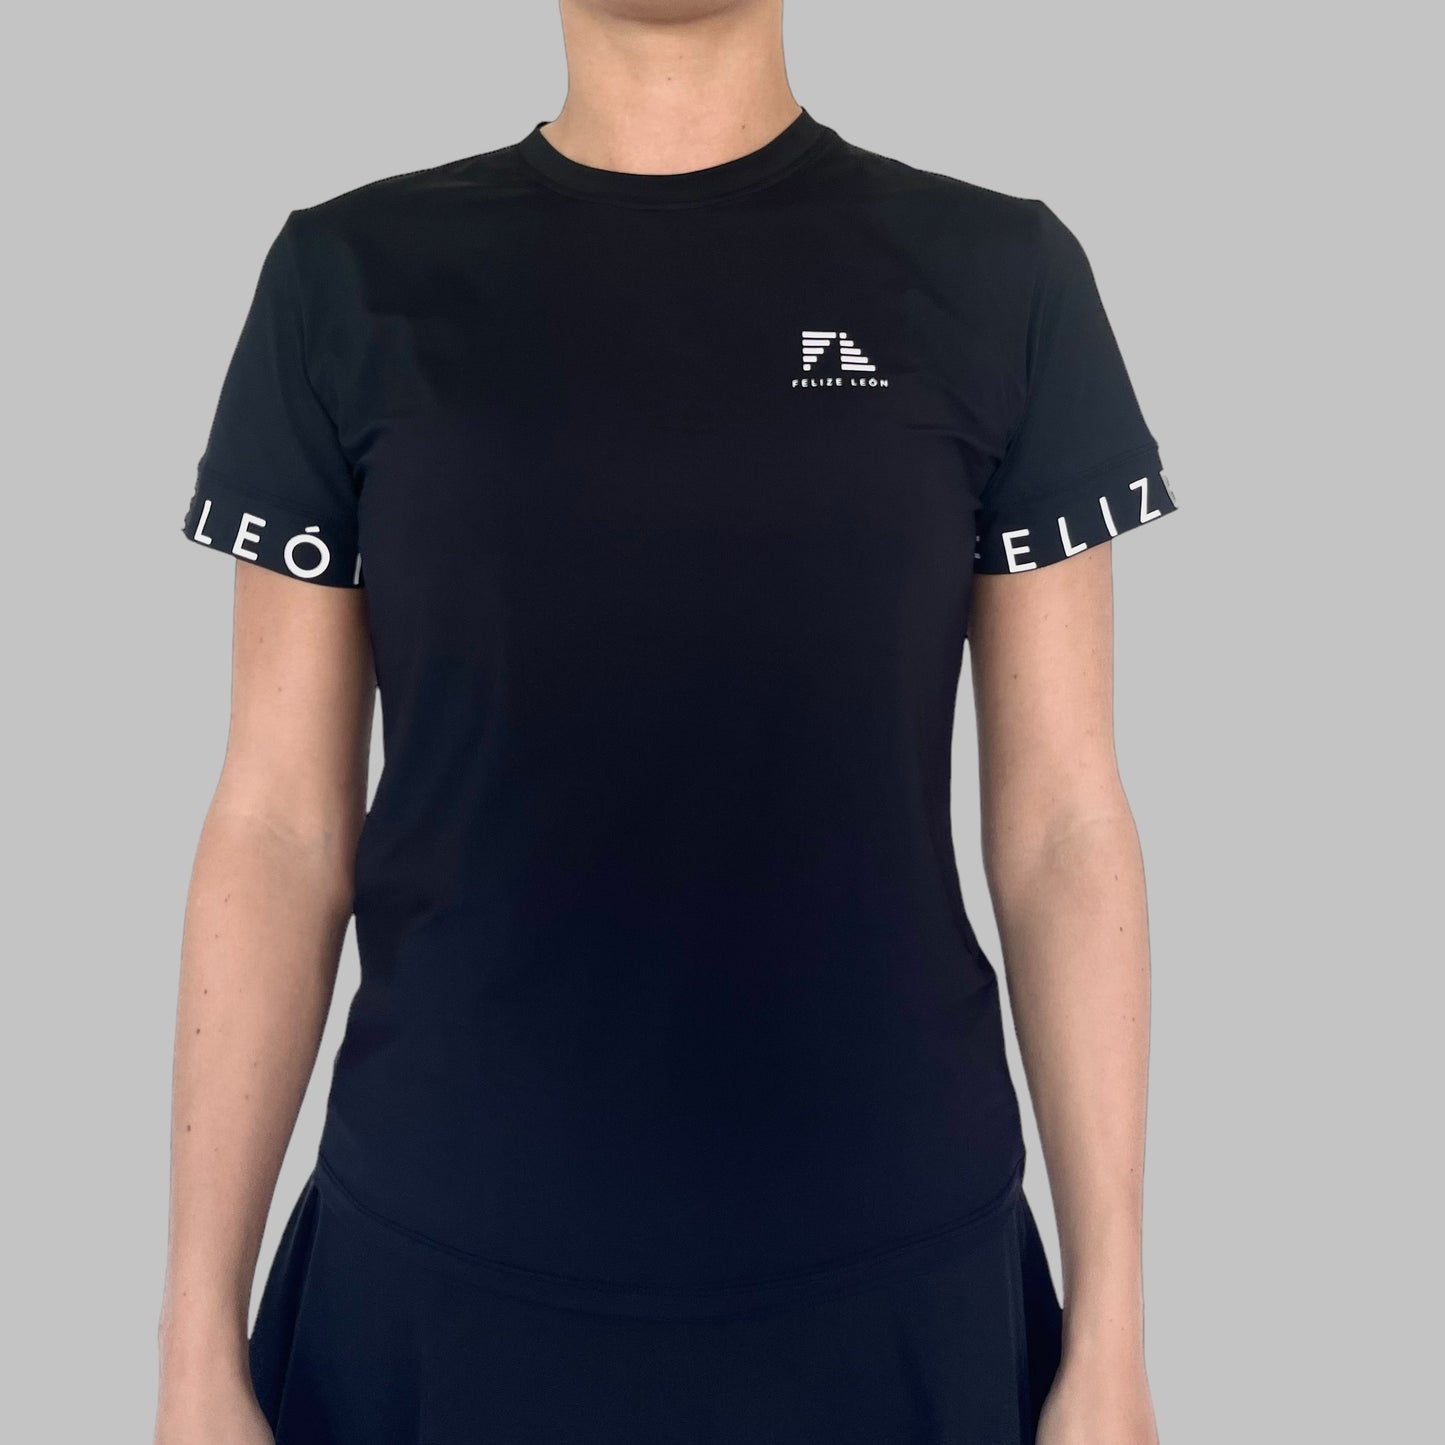 Alina Performance T-shirt - Detaljbild på ärmslut - Idealisk för racketidrotte